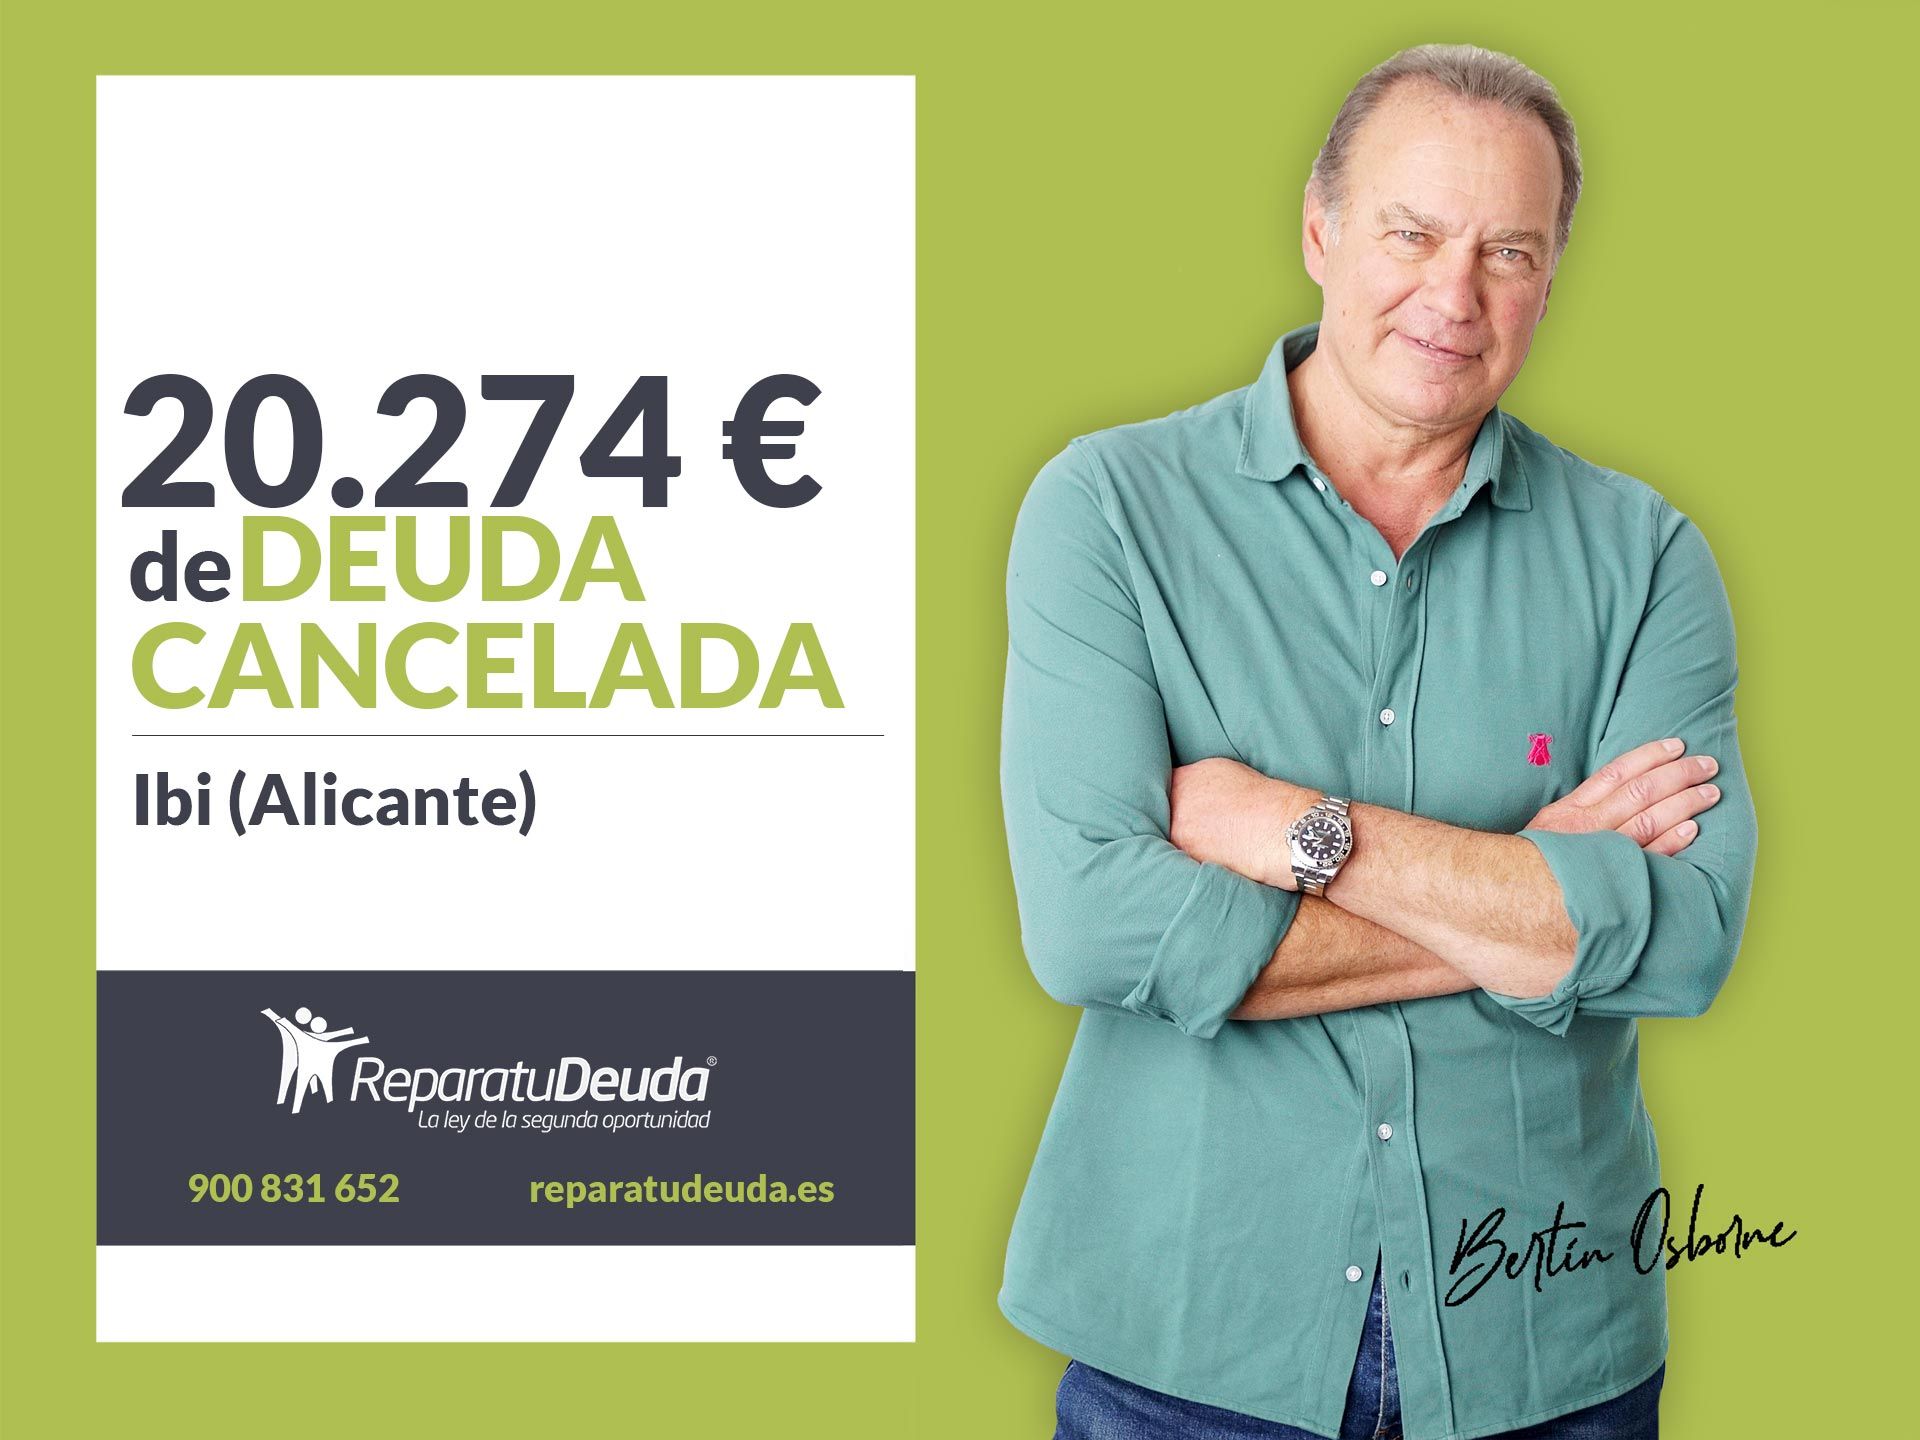 Repara tu Deuda Abogados cancela 20.274? en Ibi (Alicante) con la Ley de Segunda Oportunidad